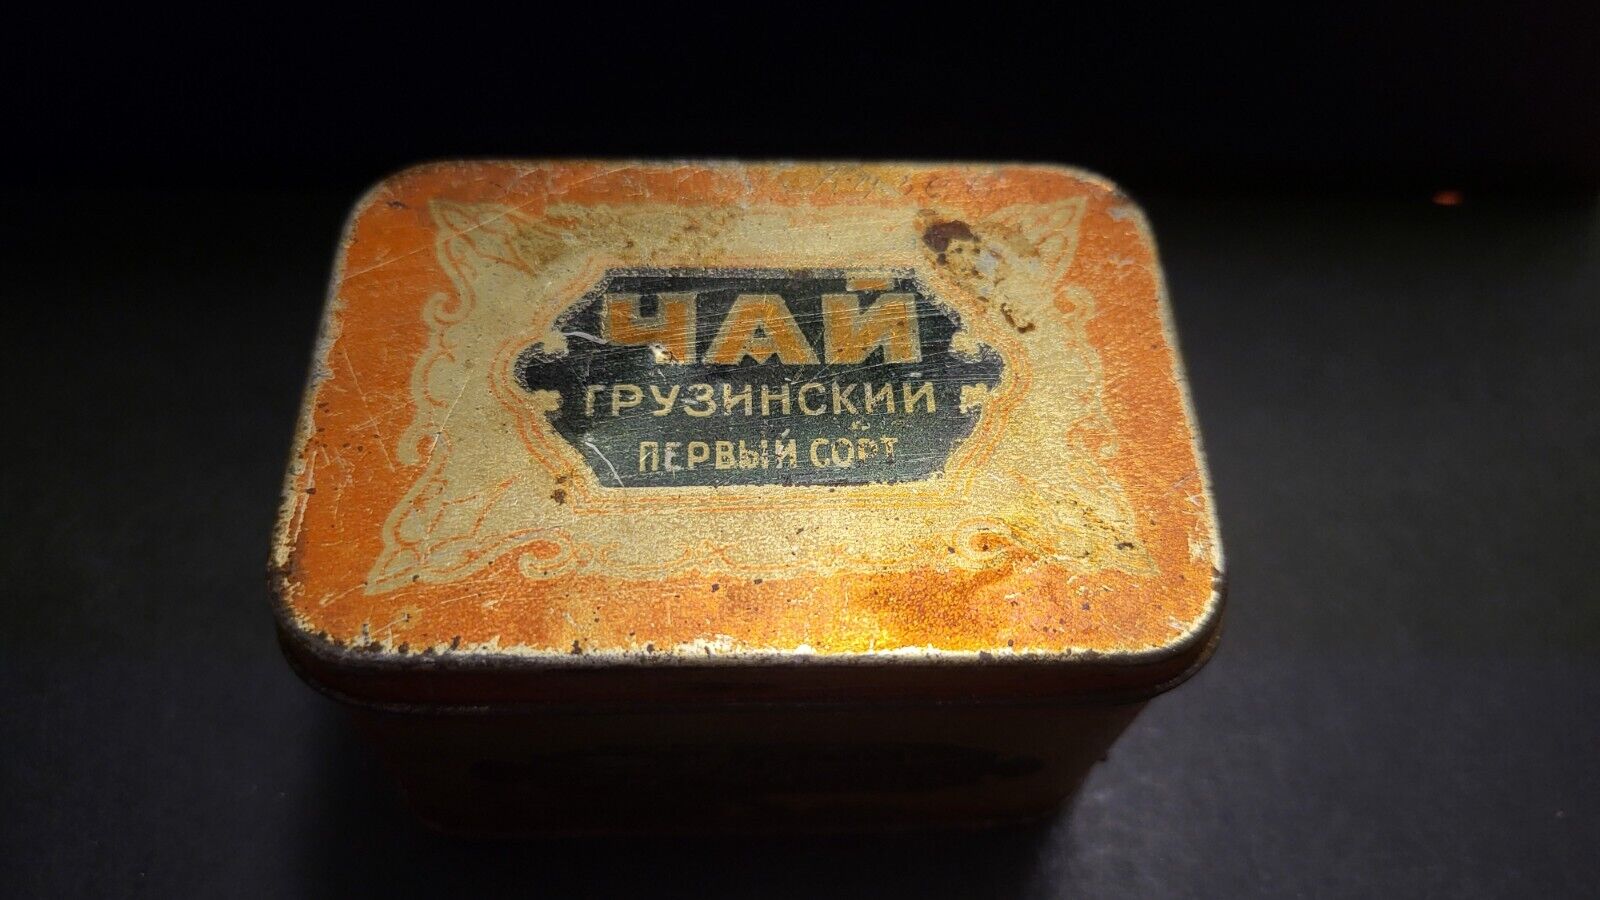 Vintage,old metal box of georgian tea marked 1938-46 on the side